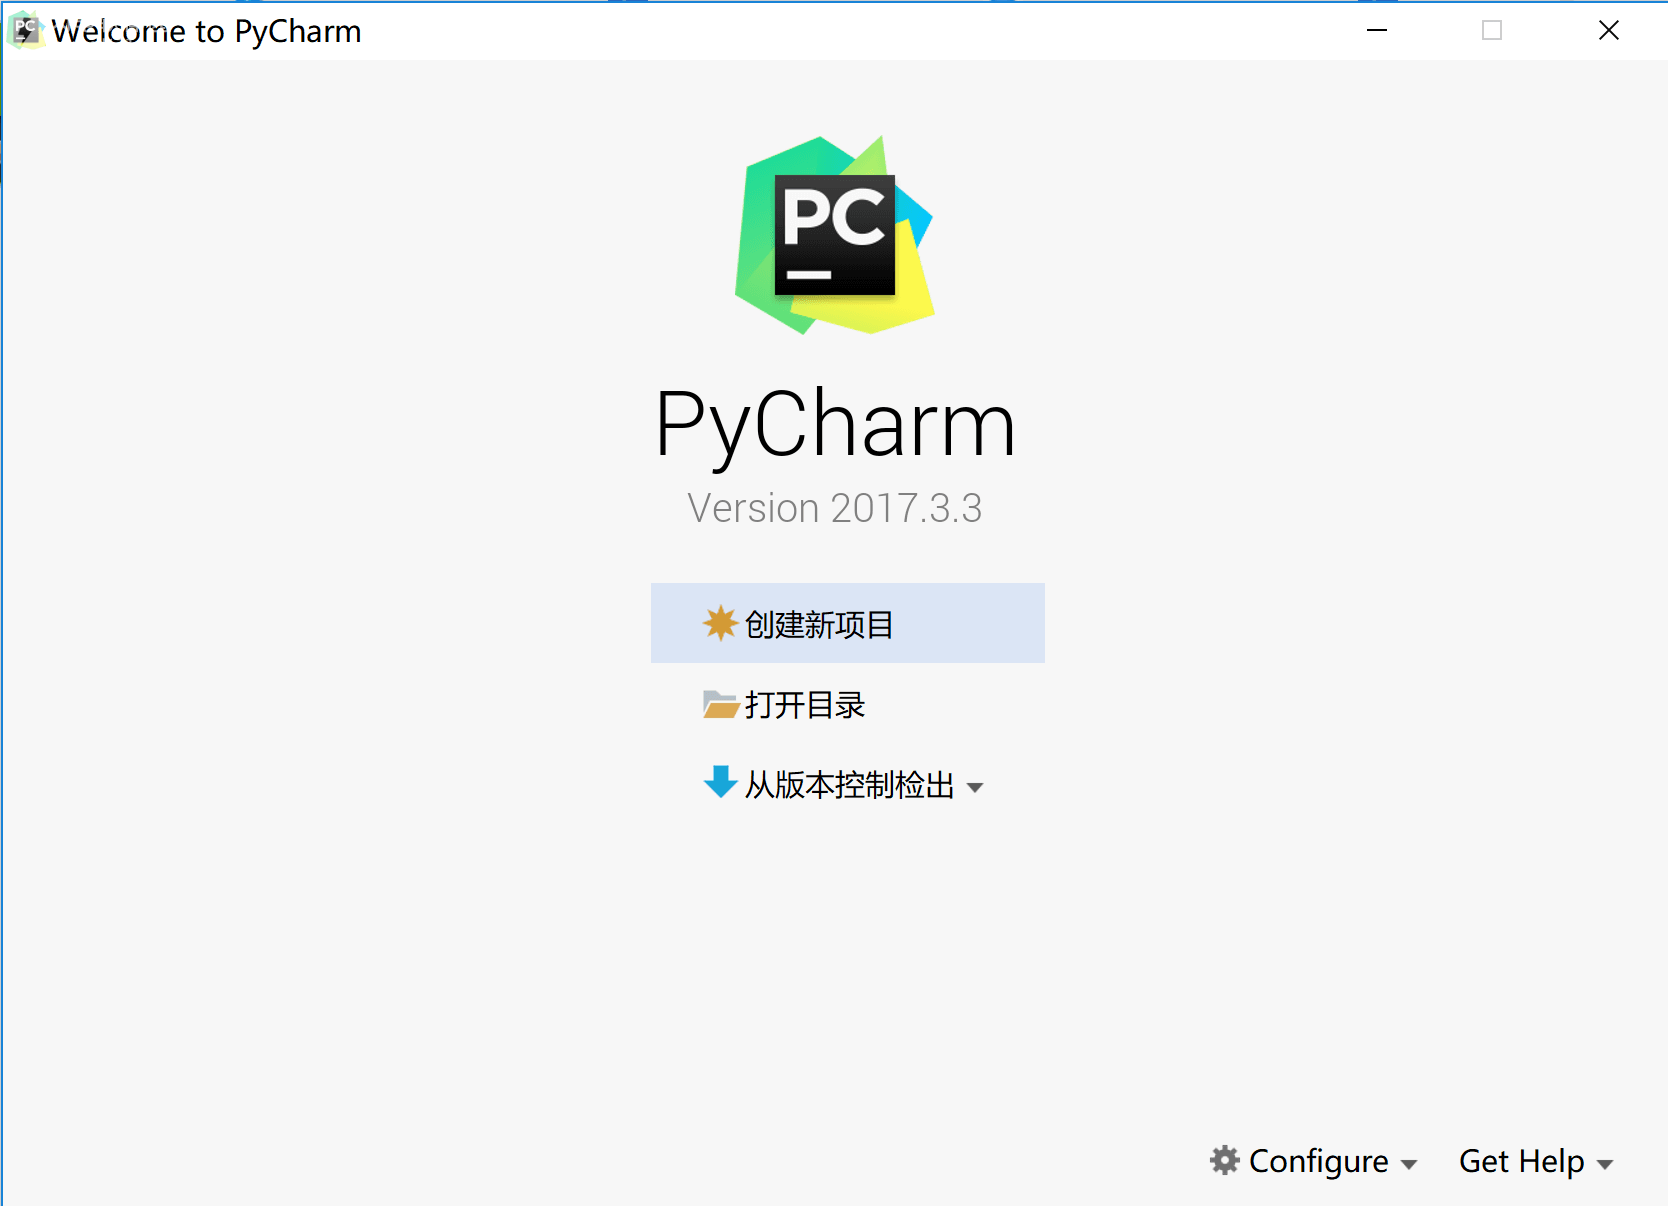 PyCharm 2017